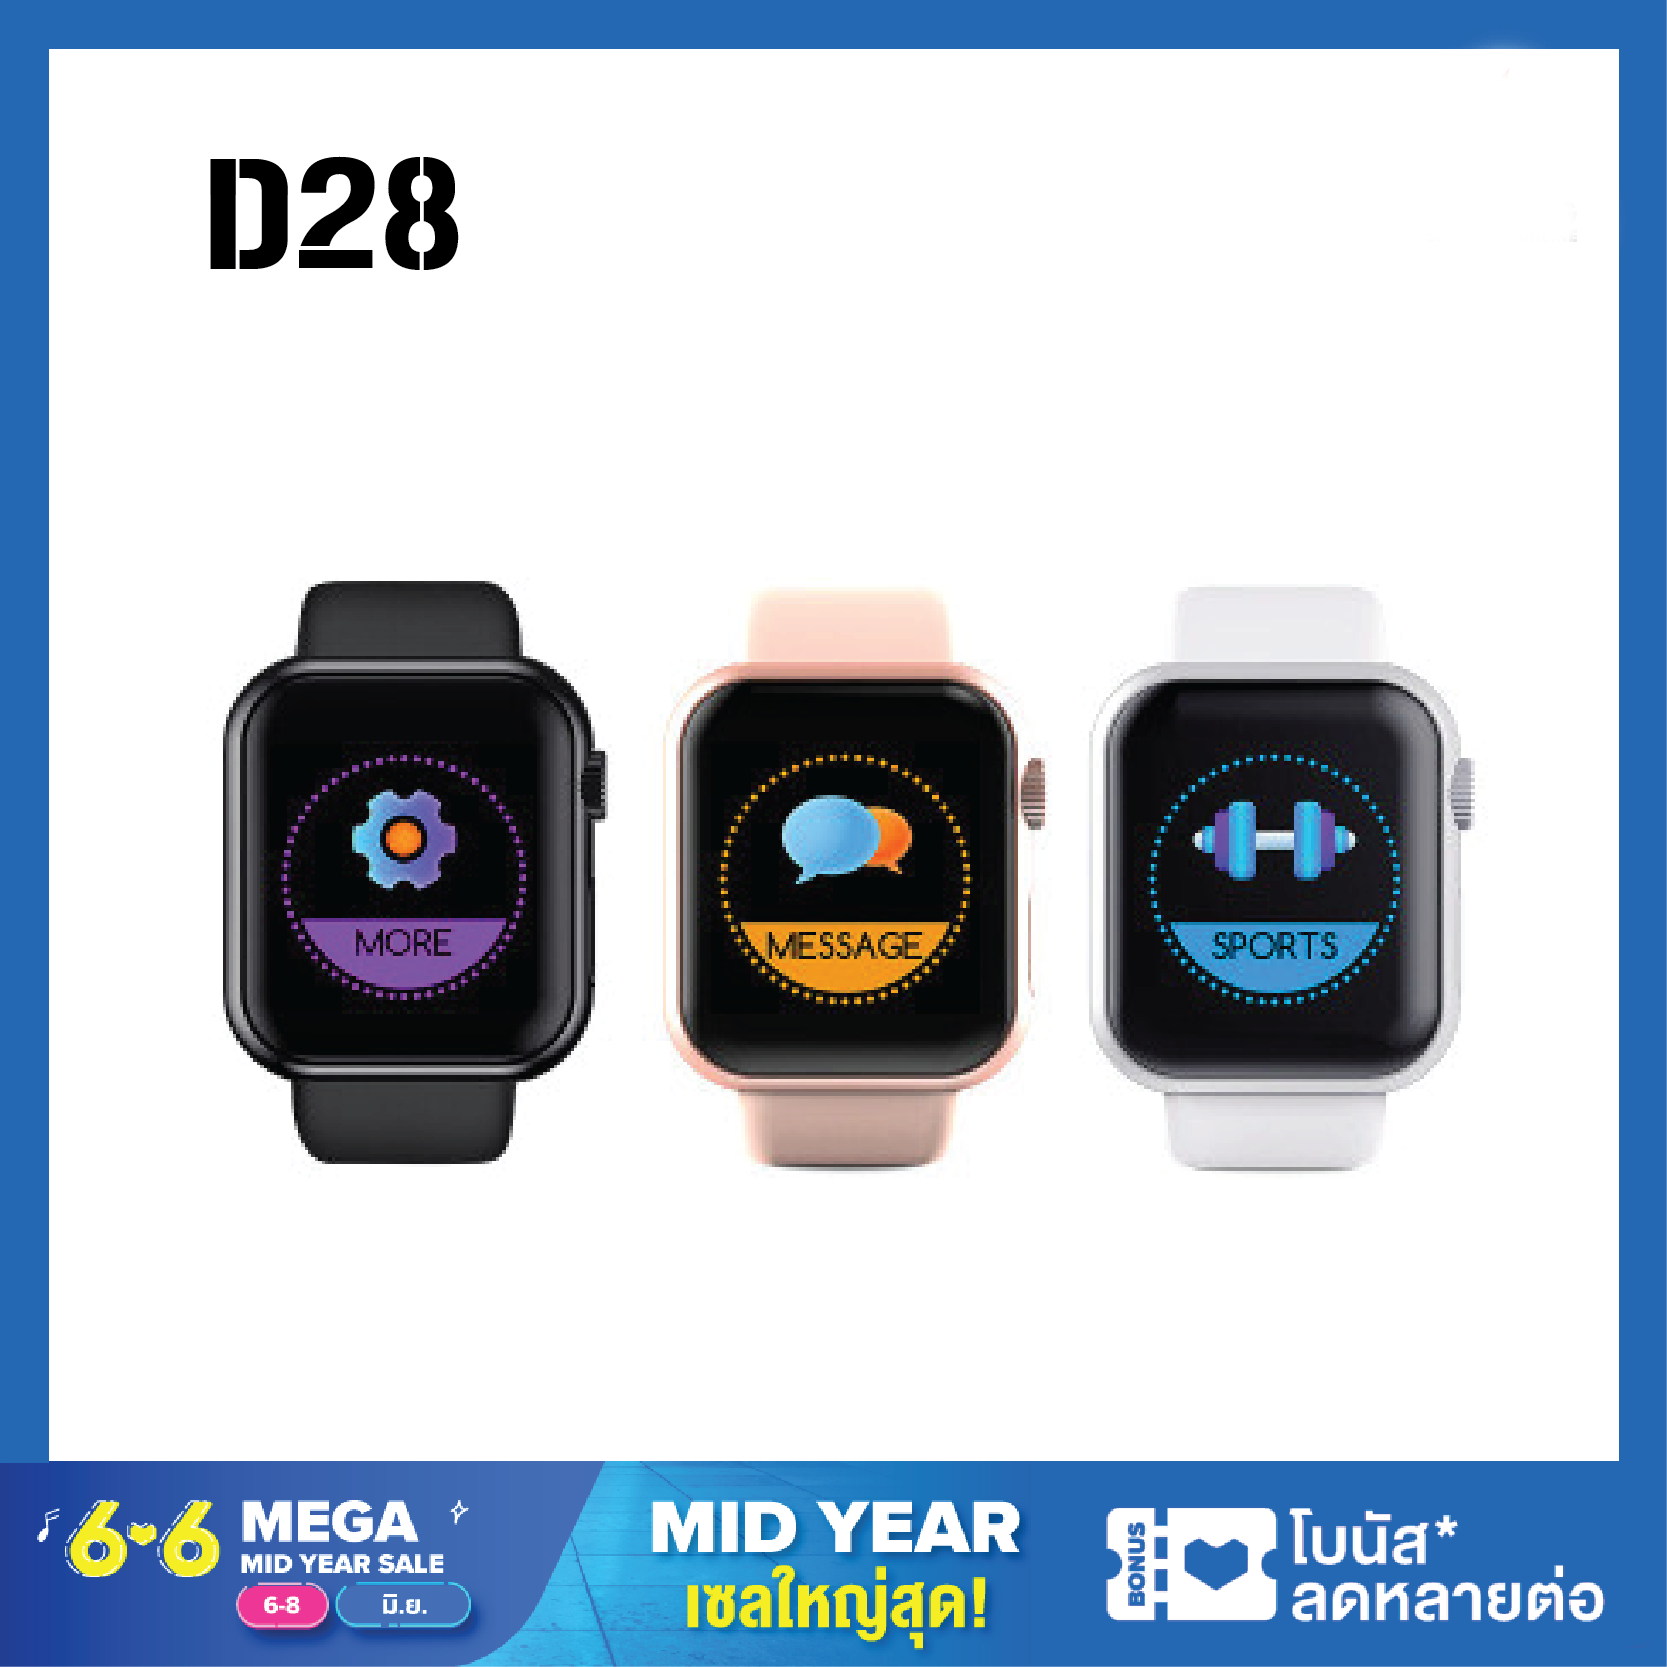 [พร้อมส่ง]Smart Watch D28 นาฬิกาแจ้งเตือน จอสี นับก้าวเดิน วัดหัวใจ แคลอรี สายรัดข้อมืออัจฉริยะ นาฬิกาอัจฉริยะ นาฬิกา นาฬิกาข้อมือ รองรับทั้ง Android และ iOS นาฬิกาสุขภาพ